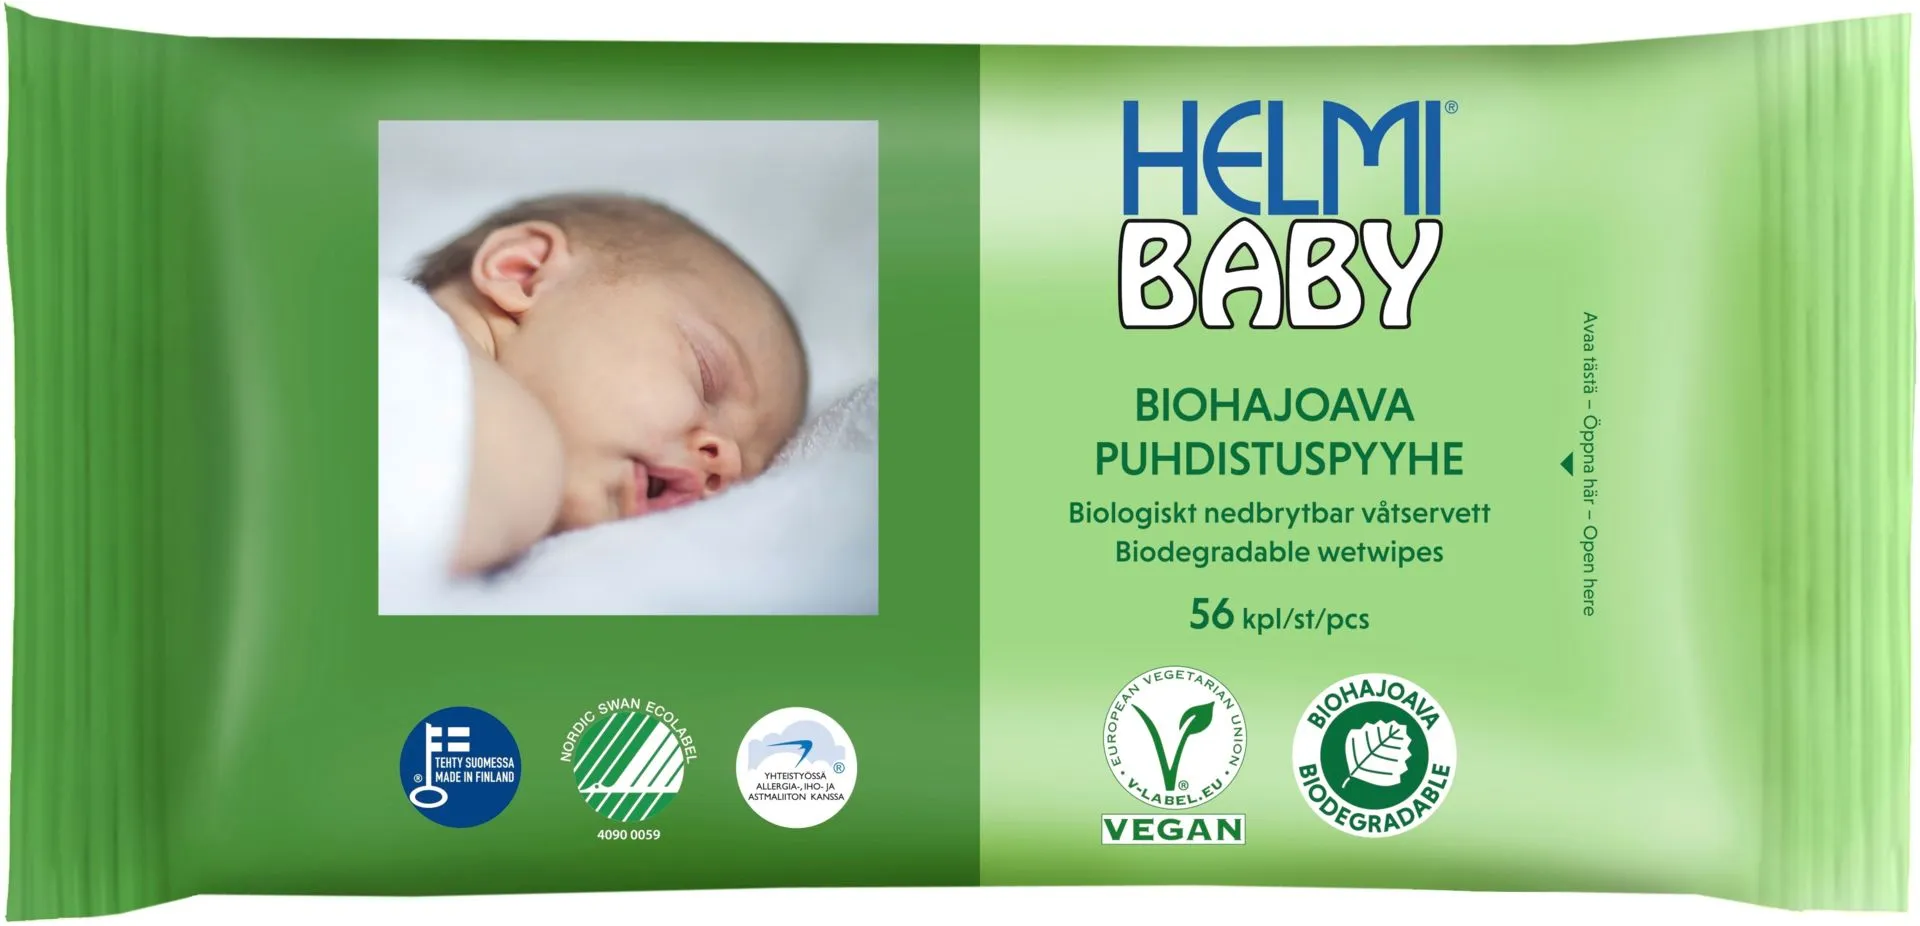 Helmi Baby Biohajoava Puhdistuspyyhe 56 kpl